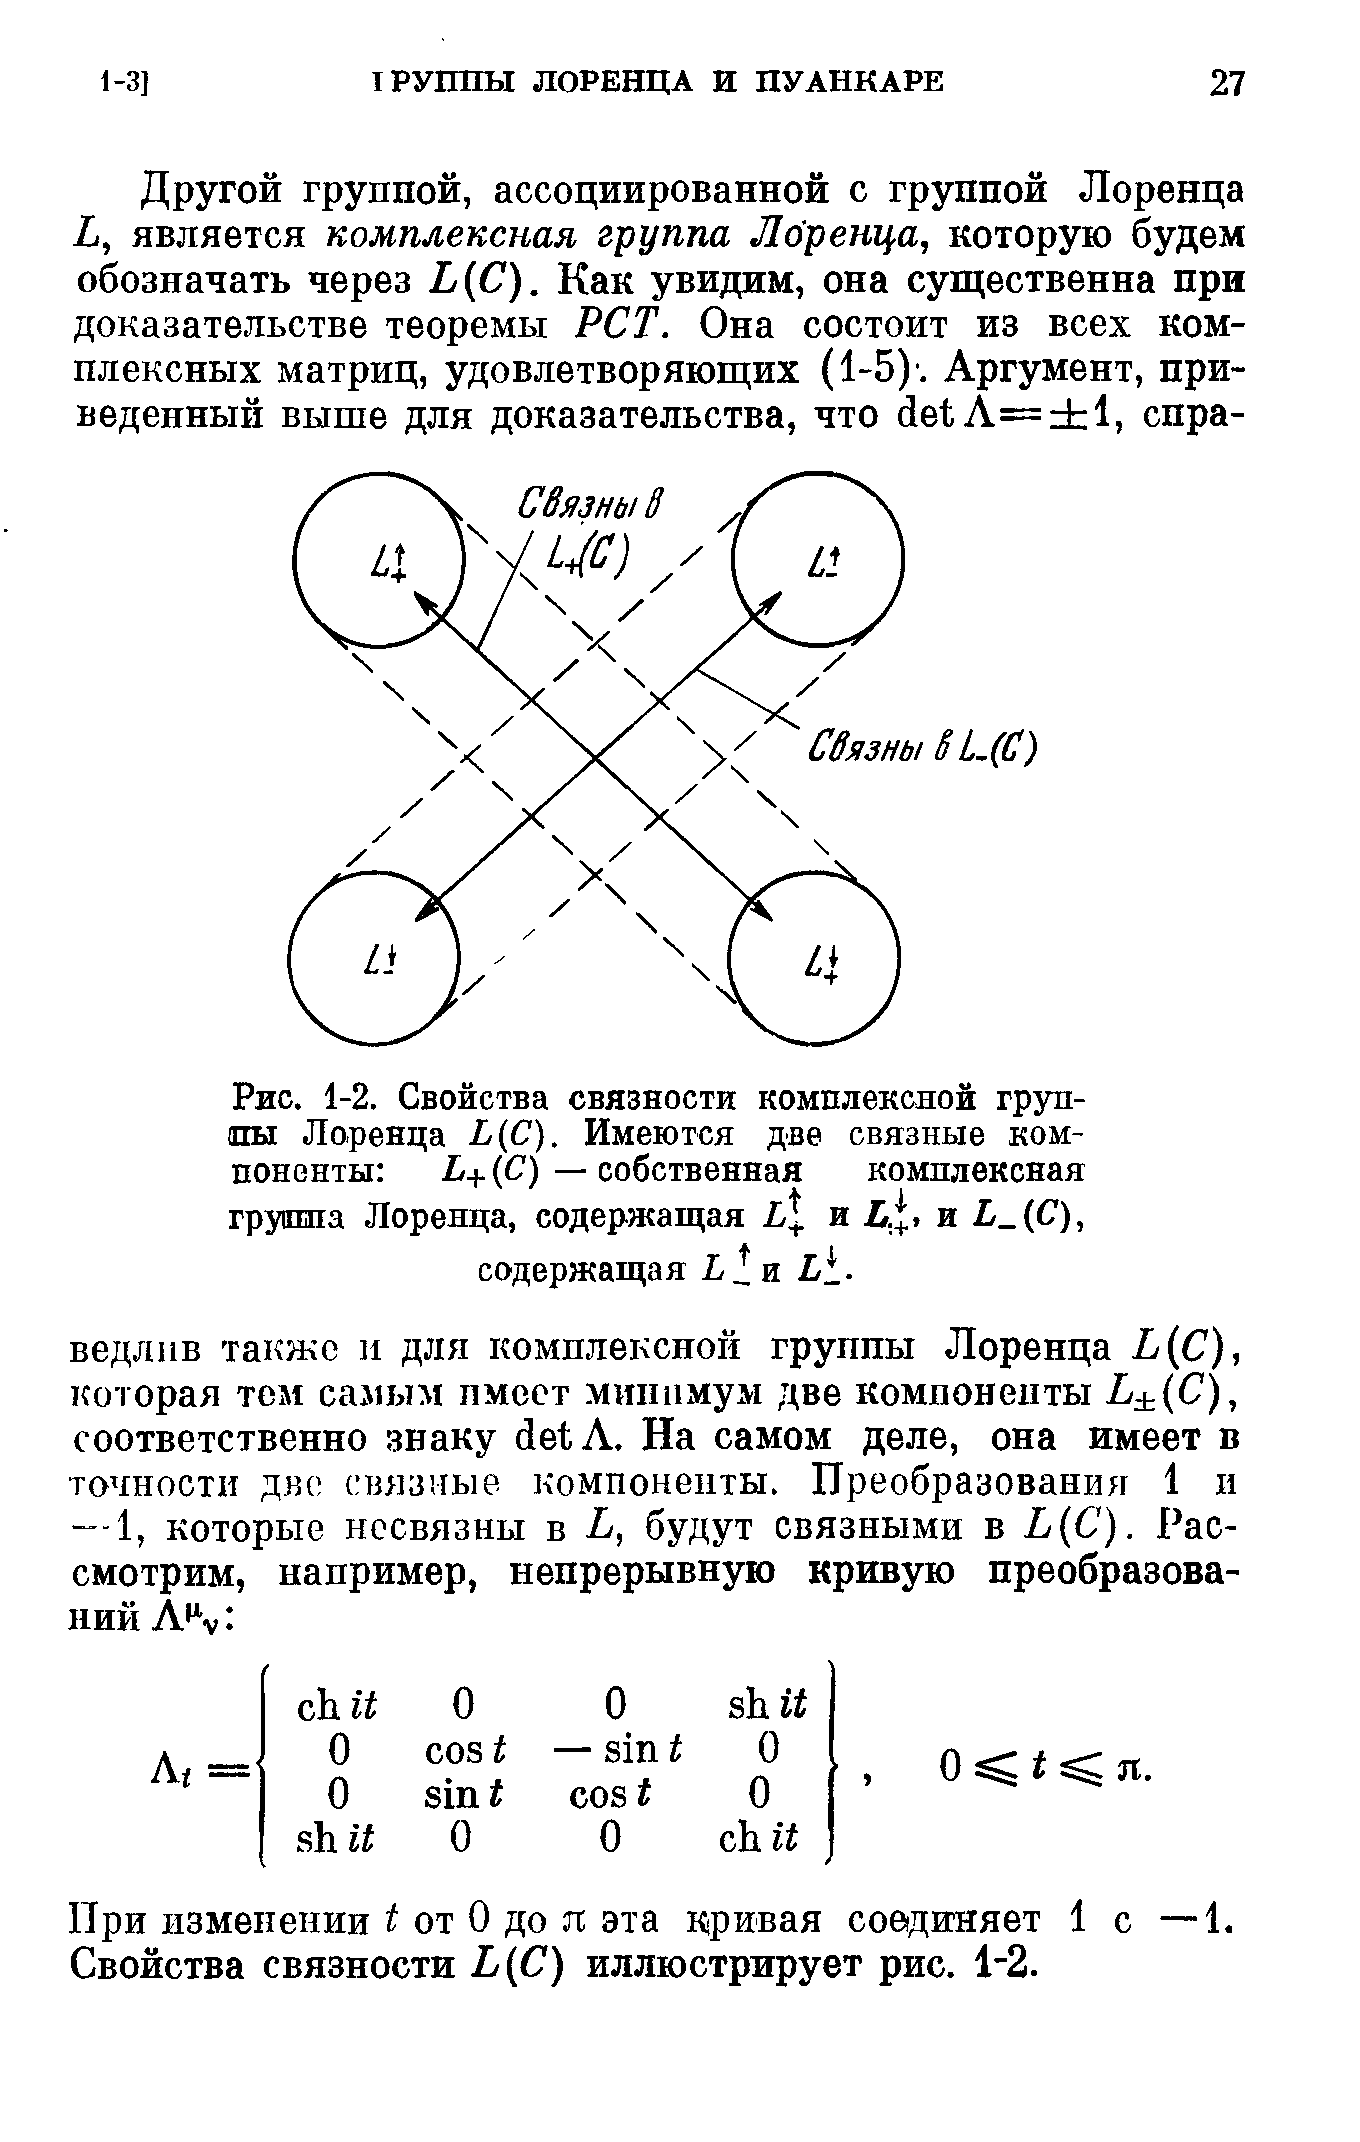 Рис. 1-2. Свойства связности <a href="/info/369460">комплексной группы Лоренца</a> Ь(С). Имеются две связные компоненты Ь+ (С) — собственная <a href="/info/369460">комплексная группа Лоренца</a>, содержащая и и Ь С), содержащая
